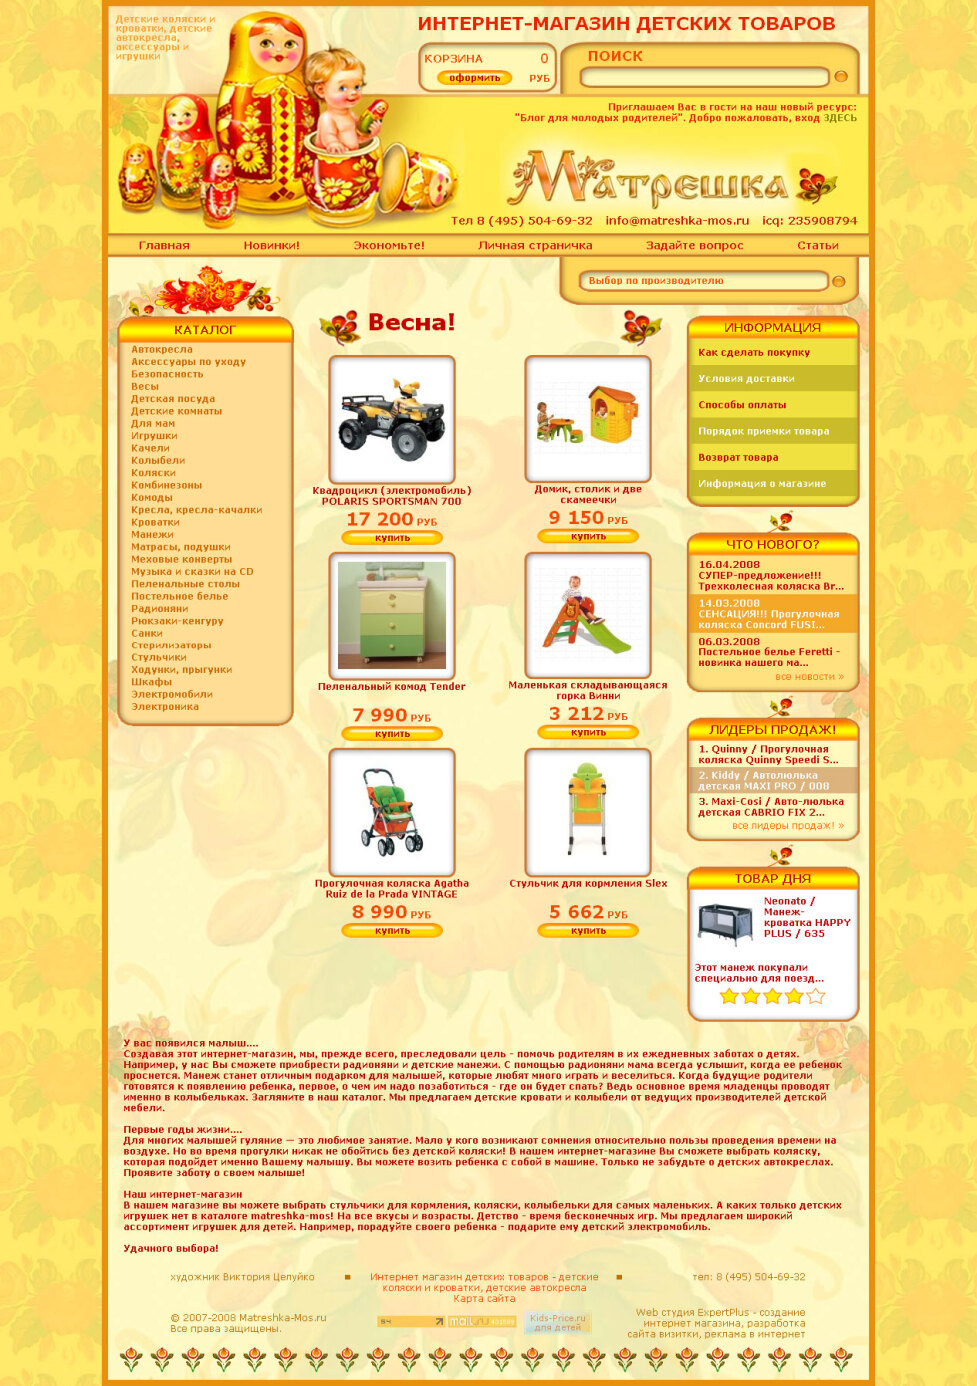 Интернет-магазин товаров для детей "Матрешка"